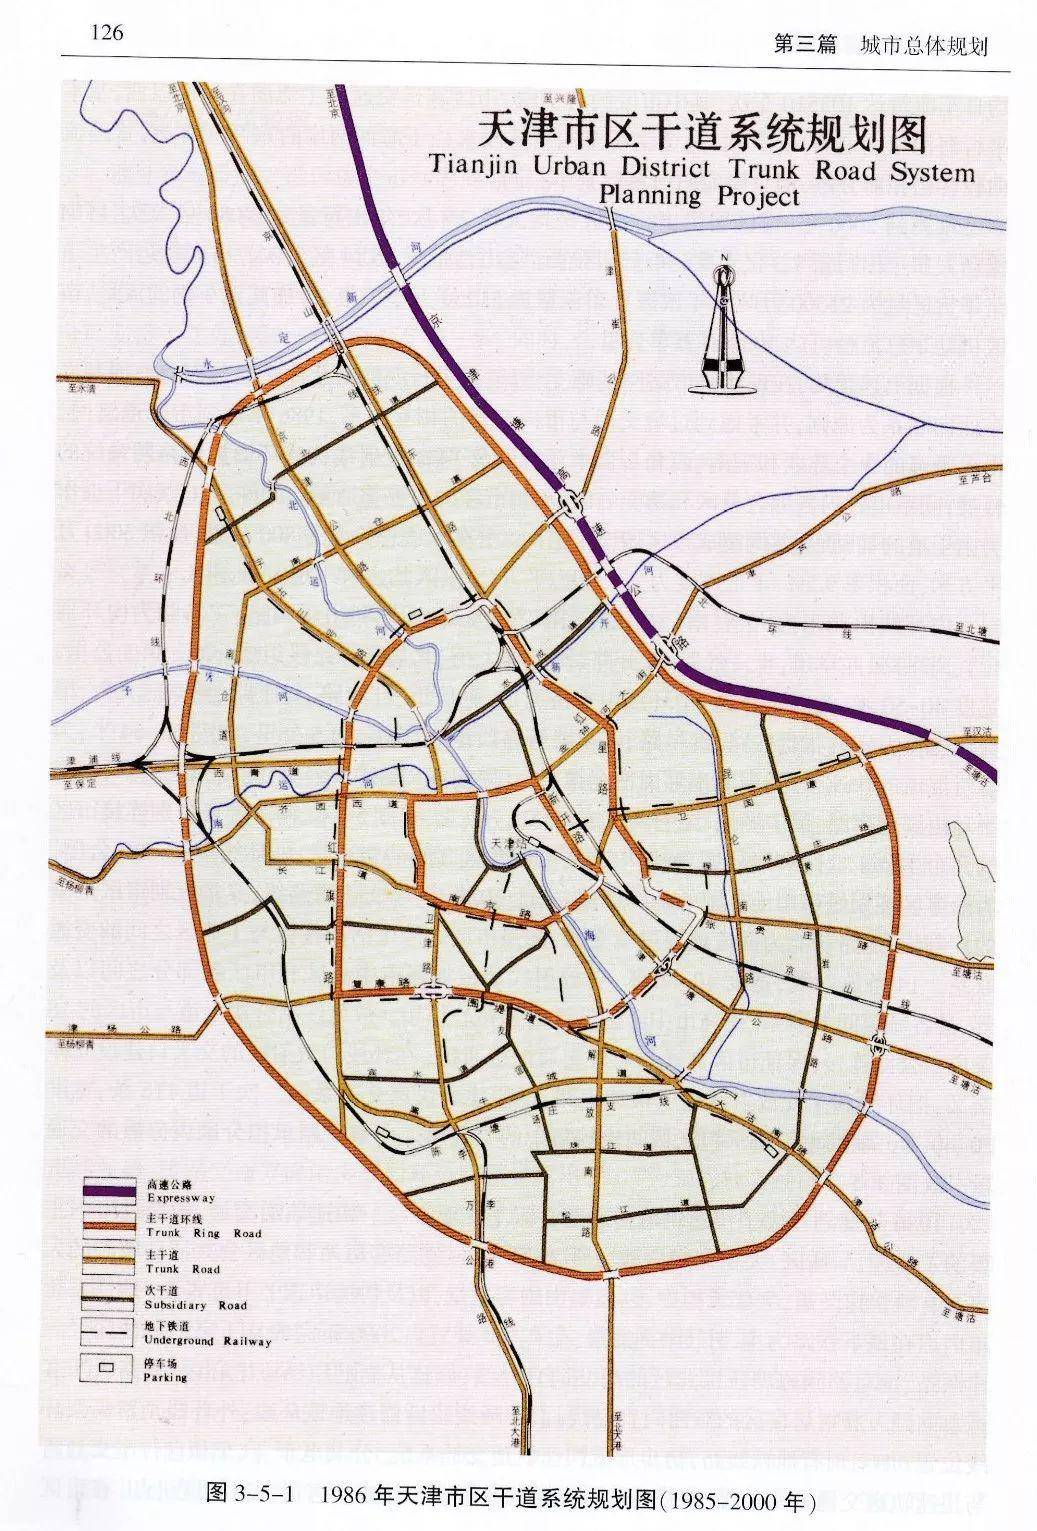 1986年天津市区干道系统规划图